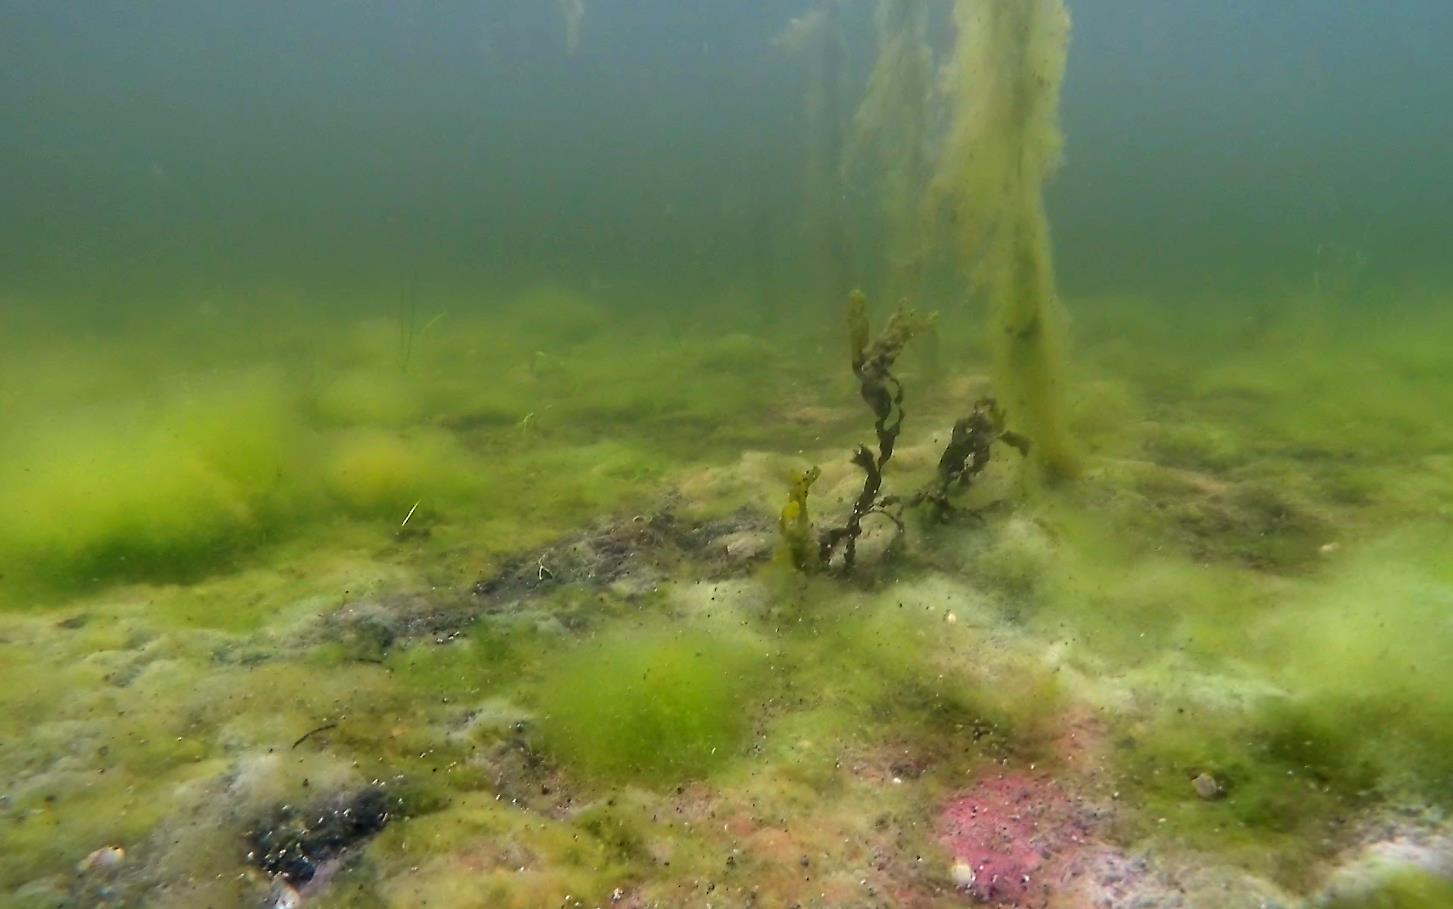 28.08.14: Brune flekker og sekkdyr på ålegresset i August 13.06.14 Noe mindre friske alger på bunn, noe i forråtnelse grå og lillafarge. Lukt av svovel.